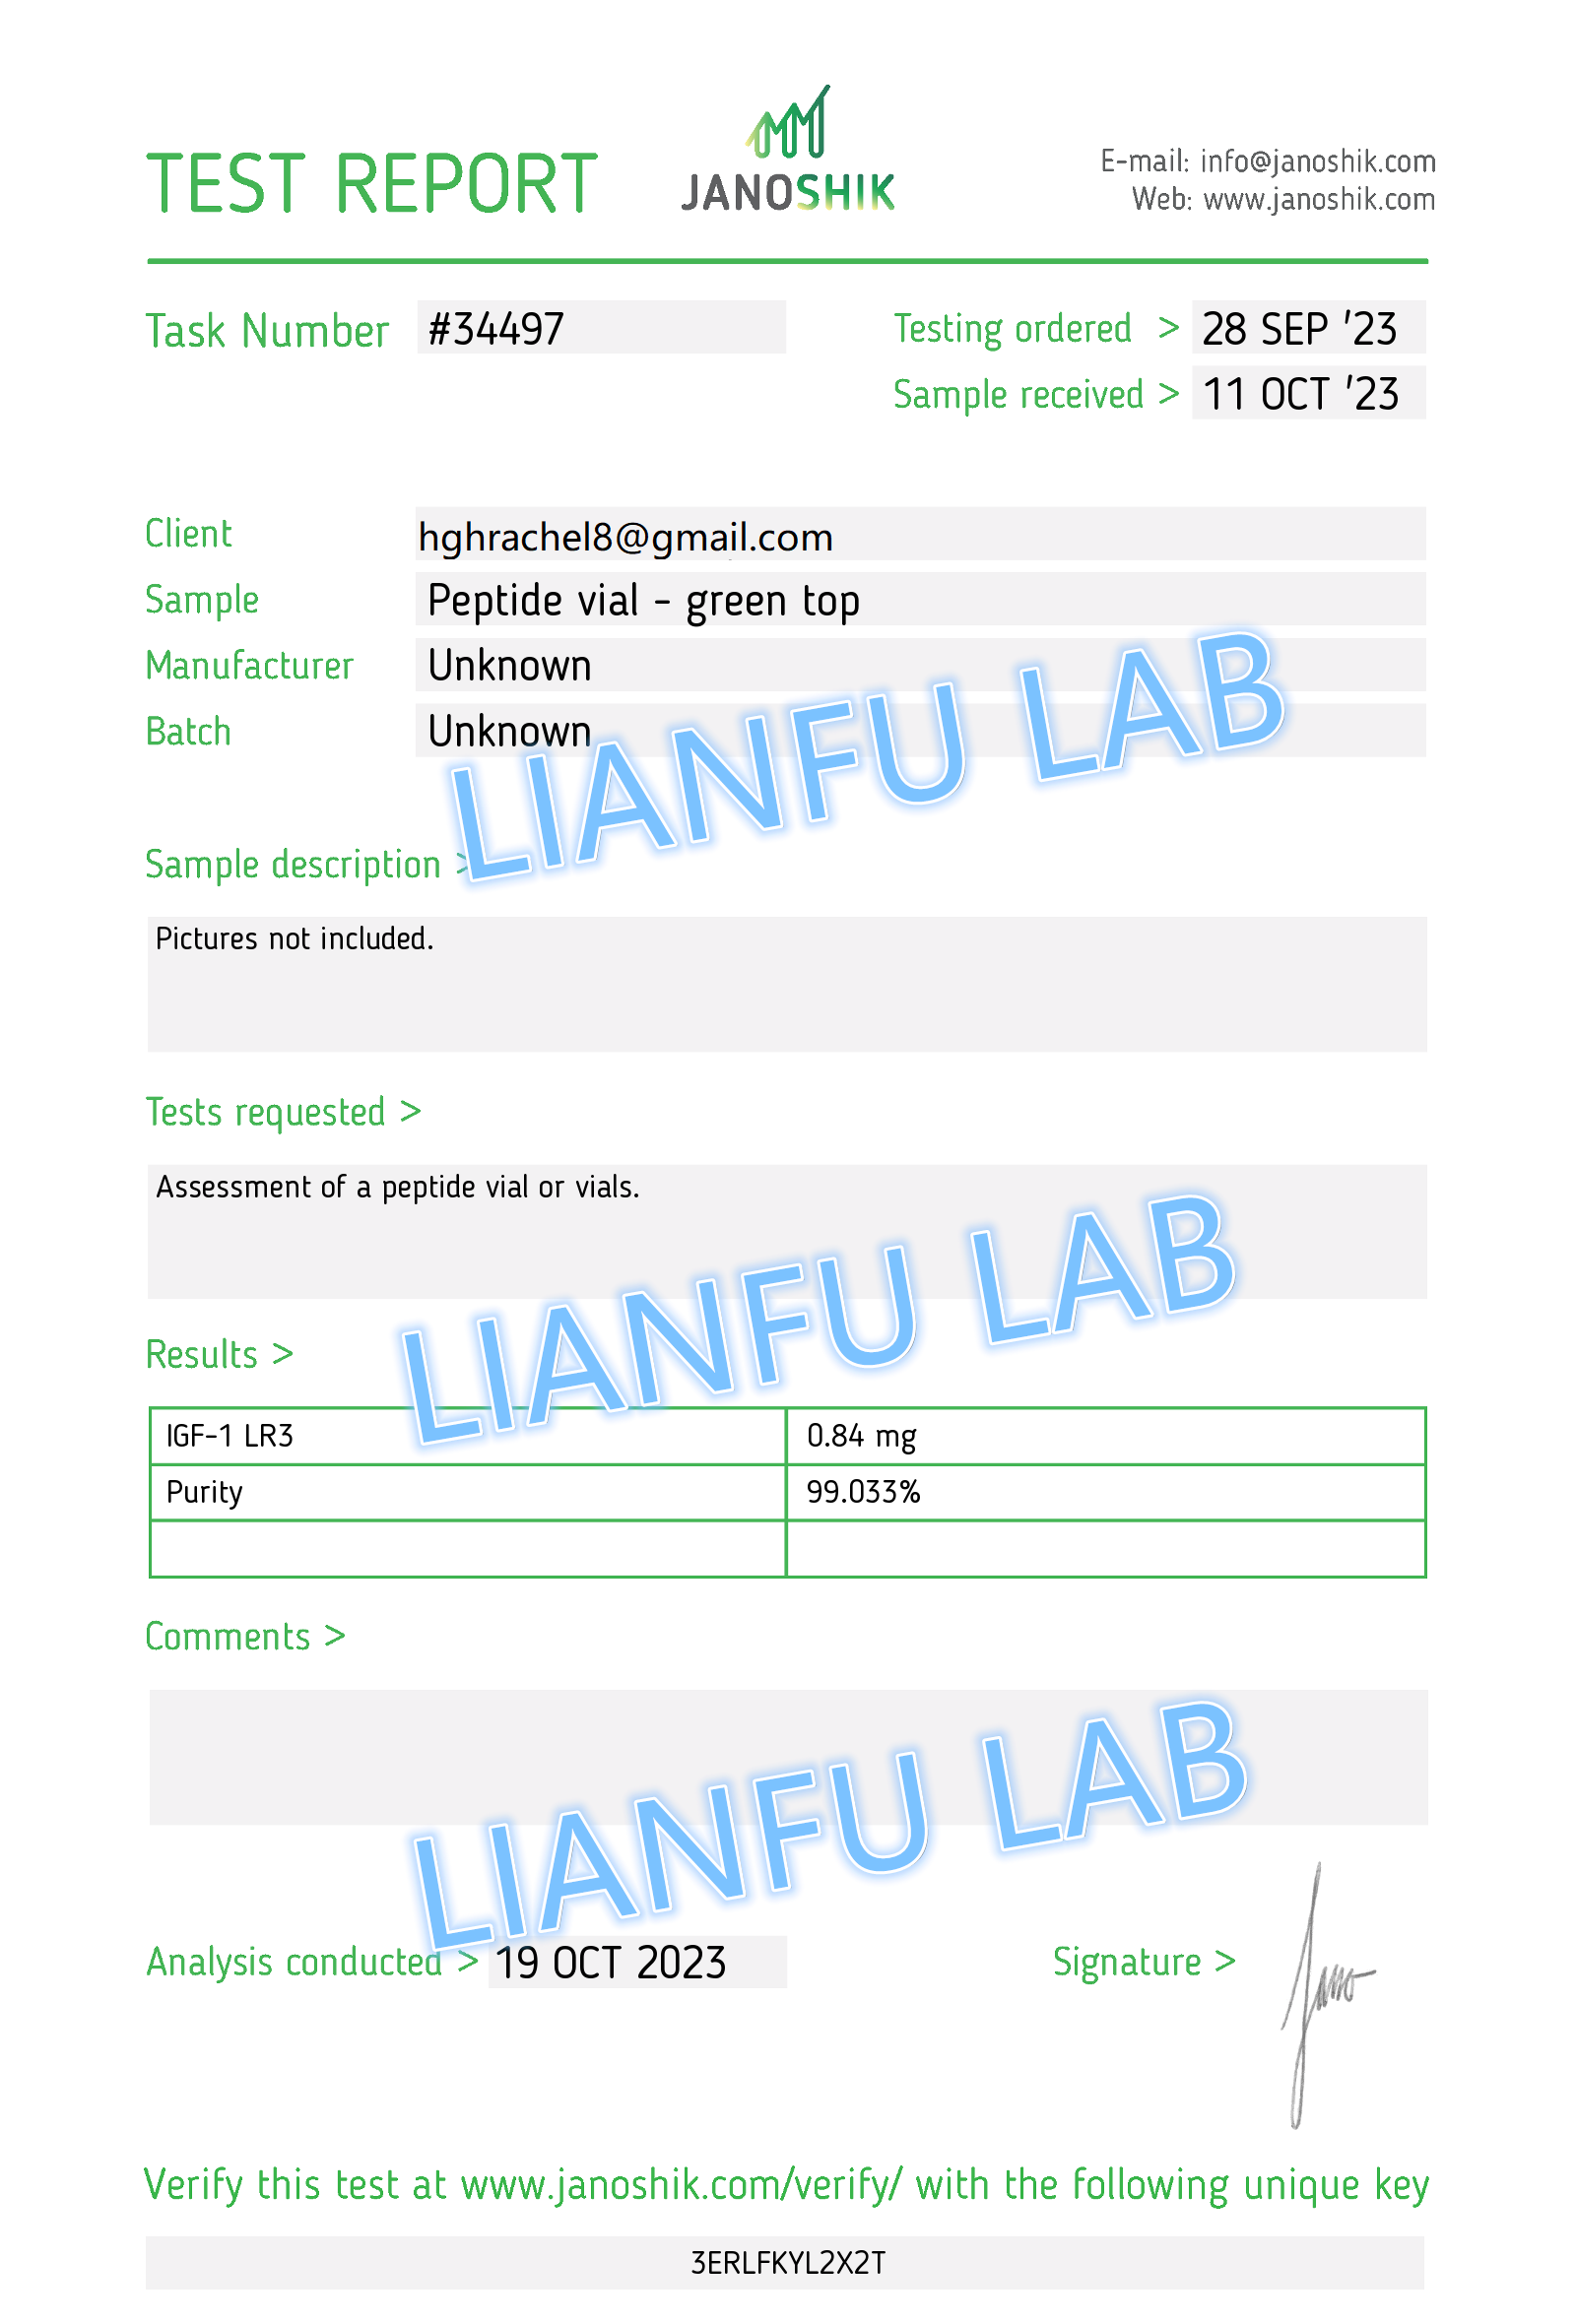 LIANFU IGF-1 LR3 warbixinta tijaabada 19,Oct-99.033% daahirnimo